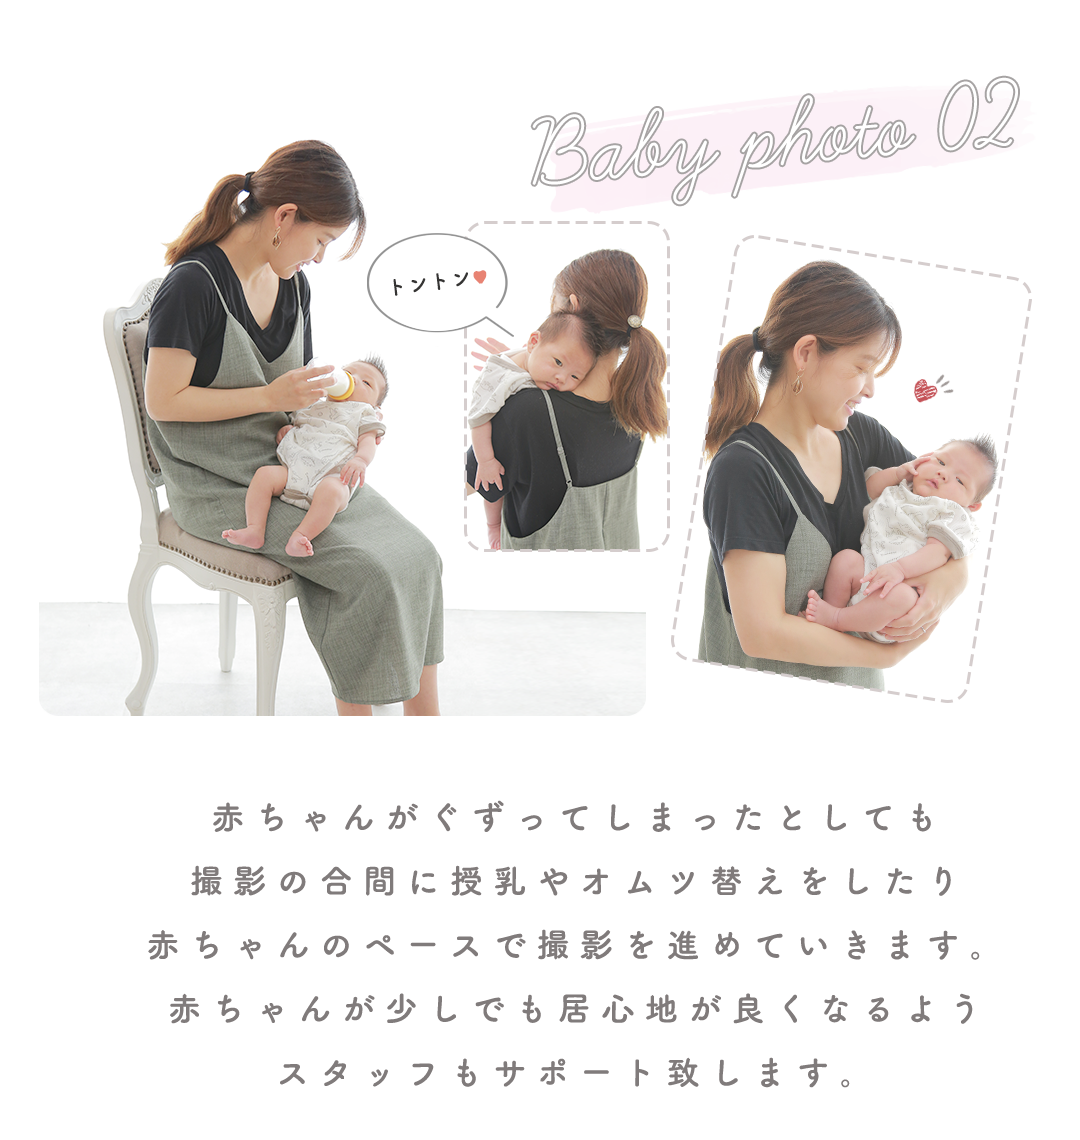 赤ちゃんがぐずってしまったとしても
撮影の合間に授乳やオムツ替えをしたり
赤ちゃんのペースで撮影を進めていきます。
赤ちゃんが少しでも居心地が良くなるよう
スタッフもサポート致します。